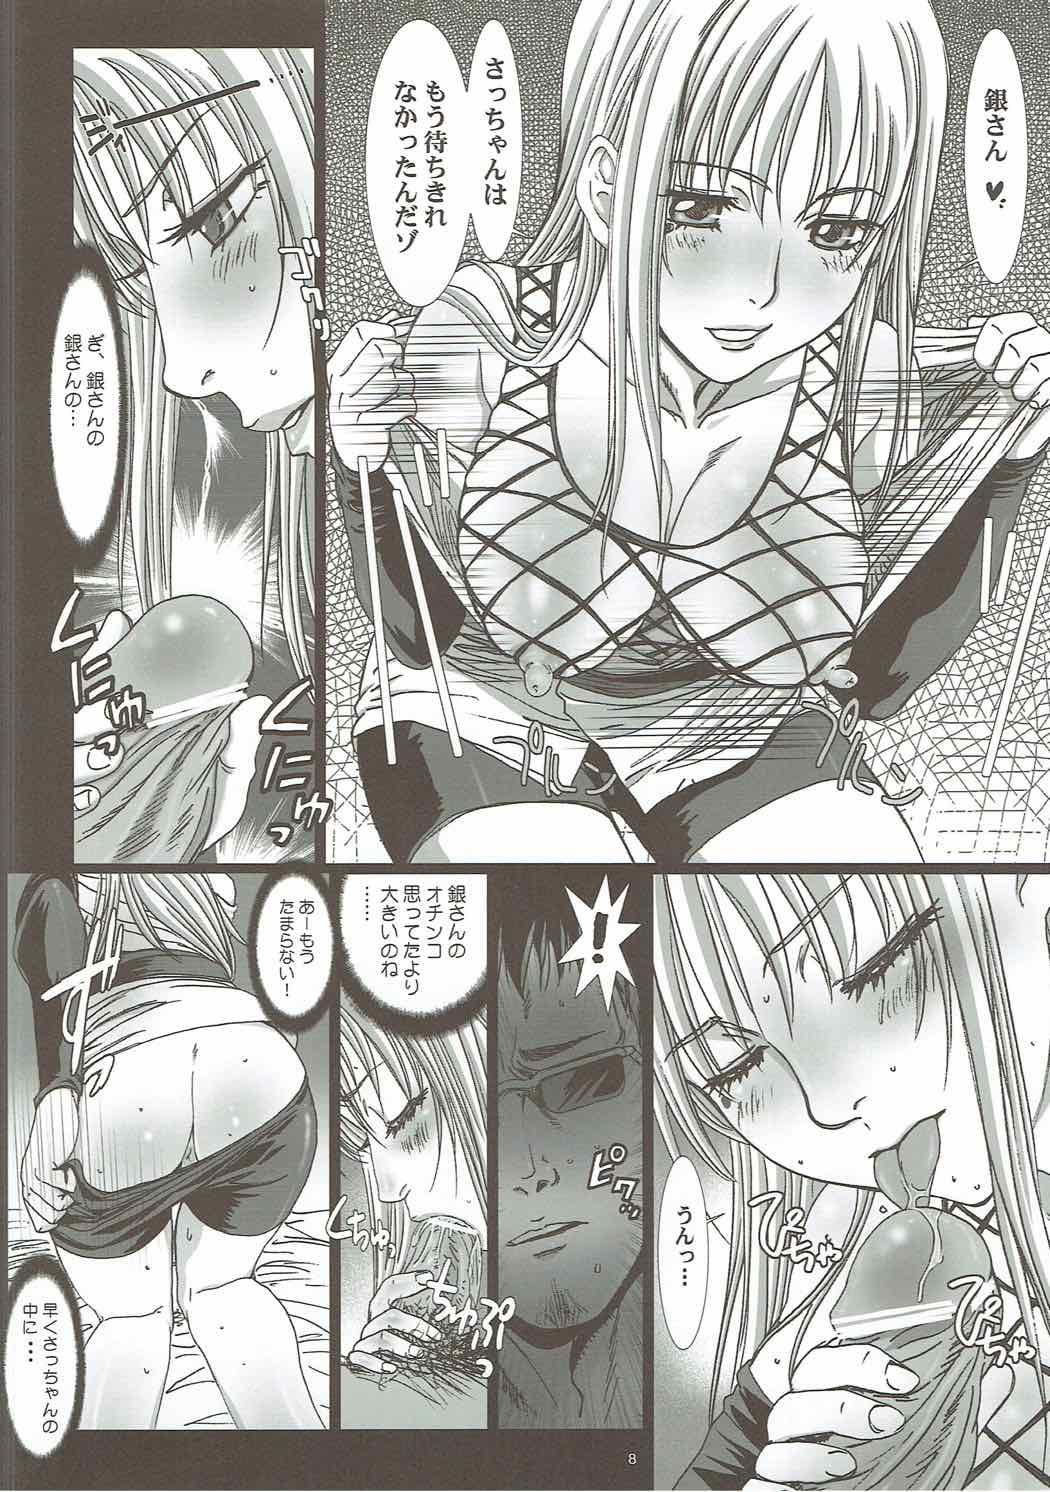 Safado Sacchan wa Kunoichi dazo? - Gintama Love - Page 5